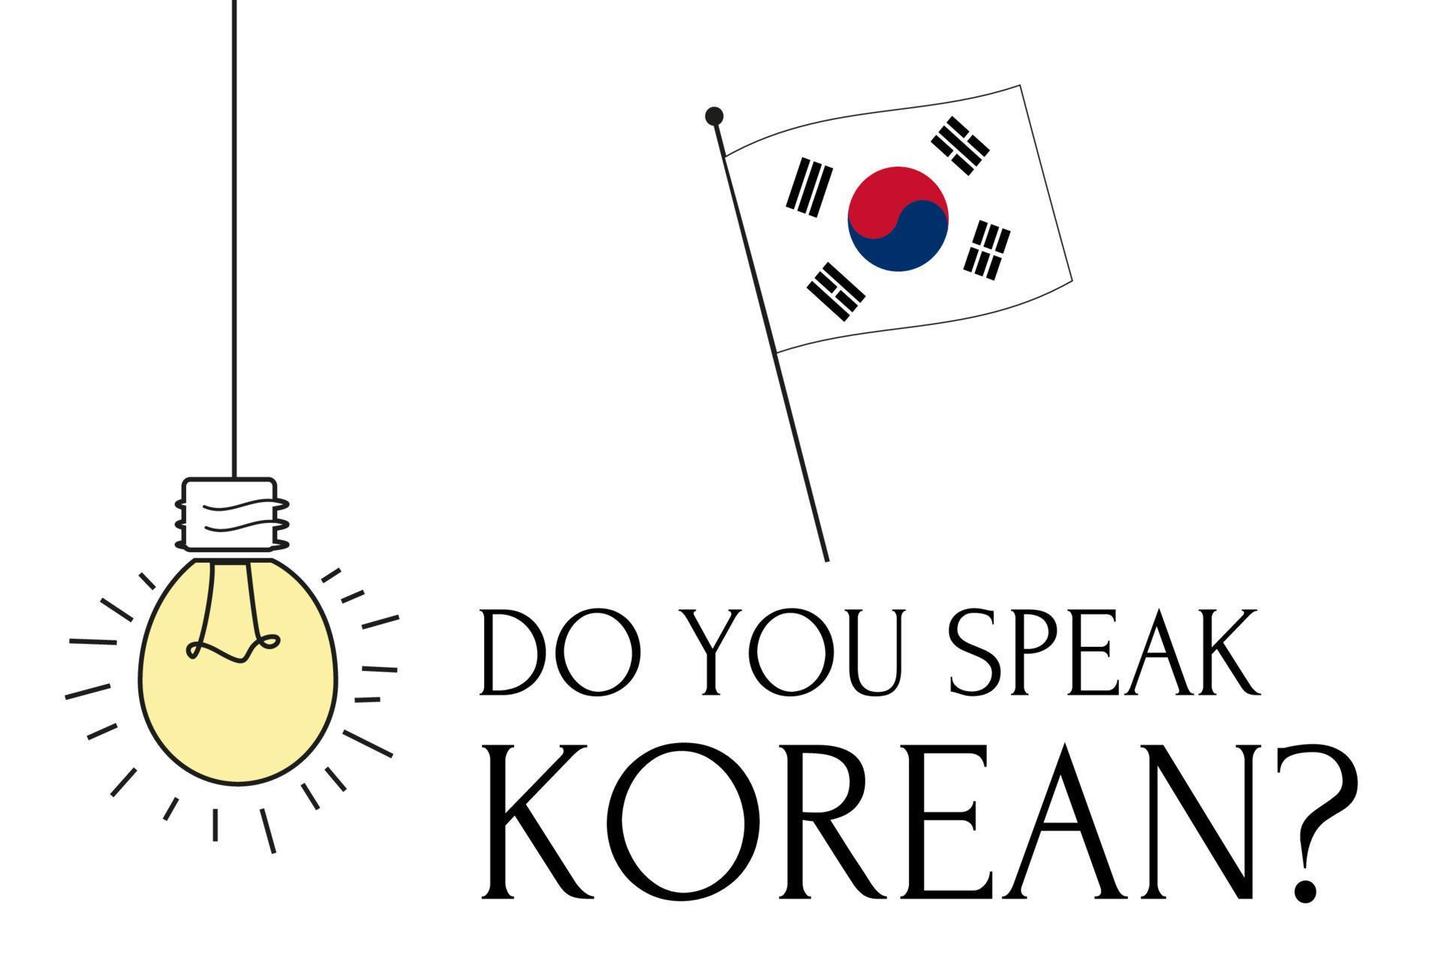 il bandiera di Sud Corea è fatto utilizzando il ufficiale coreano nazionale colori e il corretta proporzione. fare voi parlare coreano vettore